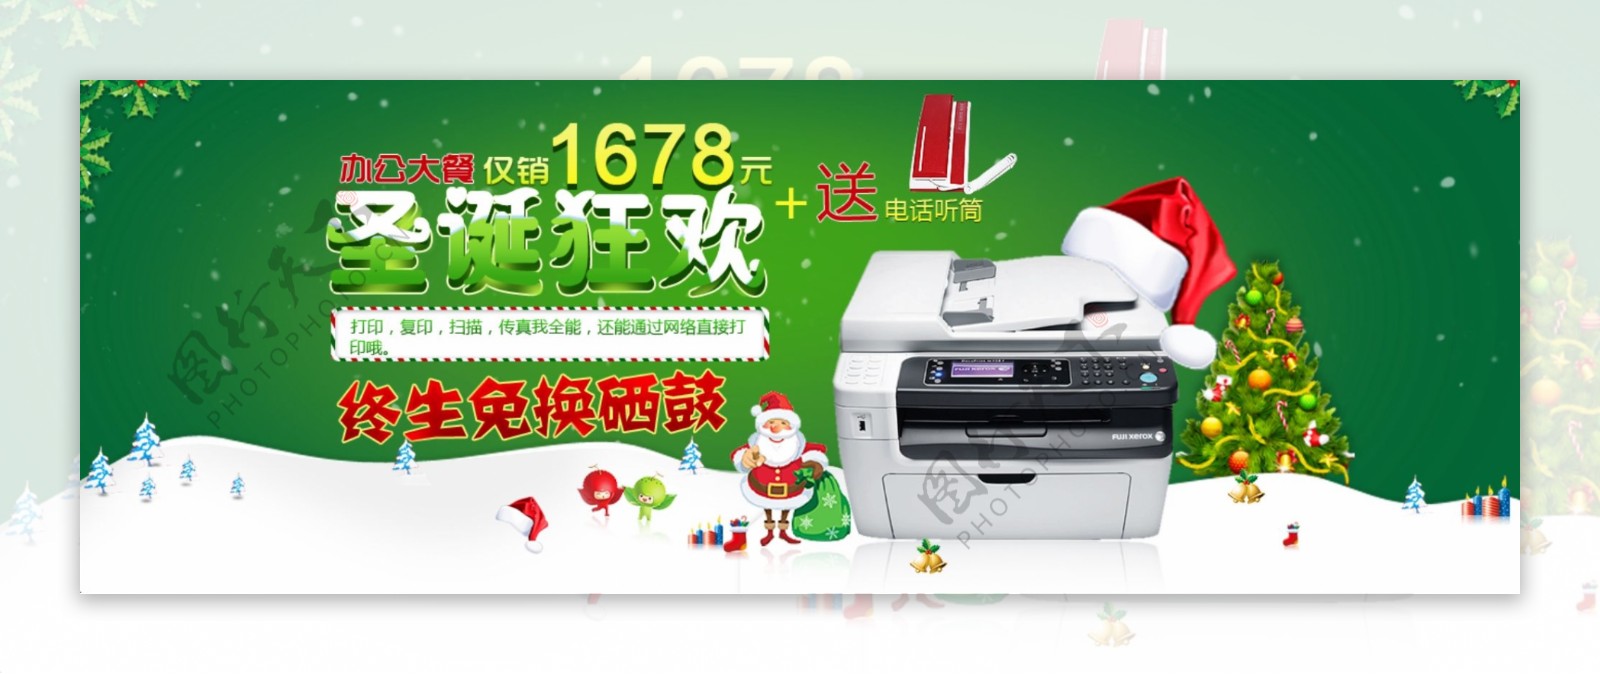 圣诞狂欢打印机图片